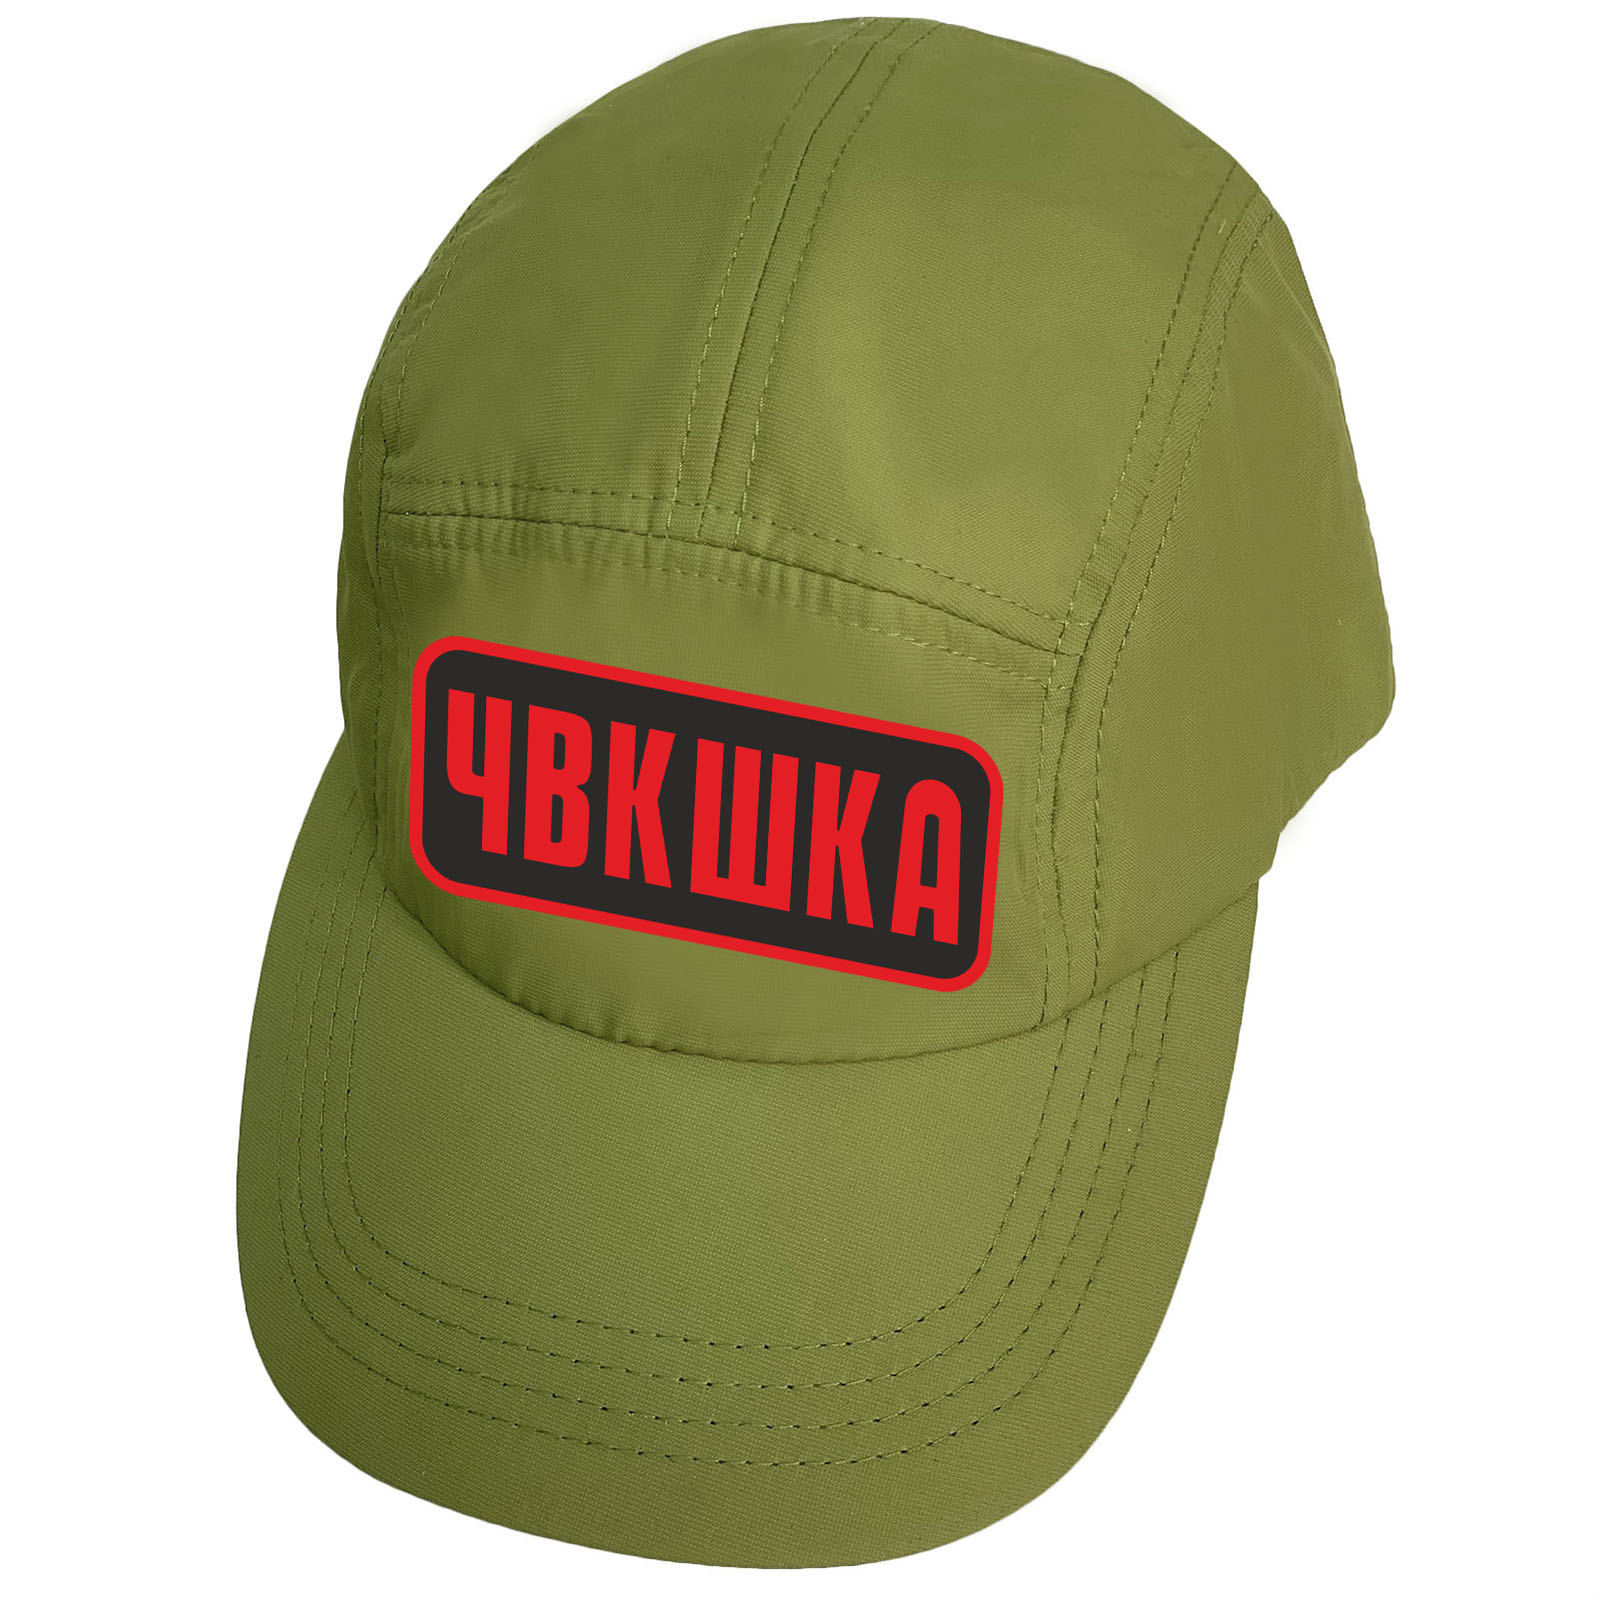 Купить зеленую надежную кепку-пятипанельку с термоаппликацией ЧВКшка онлайн